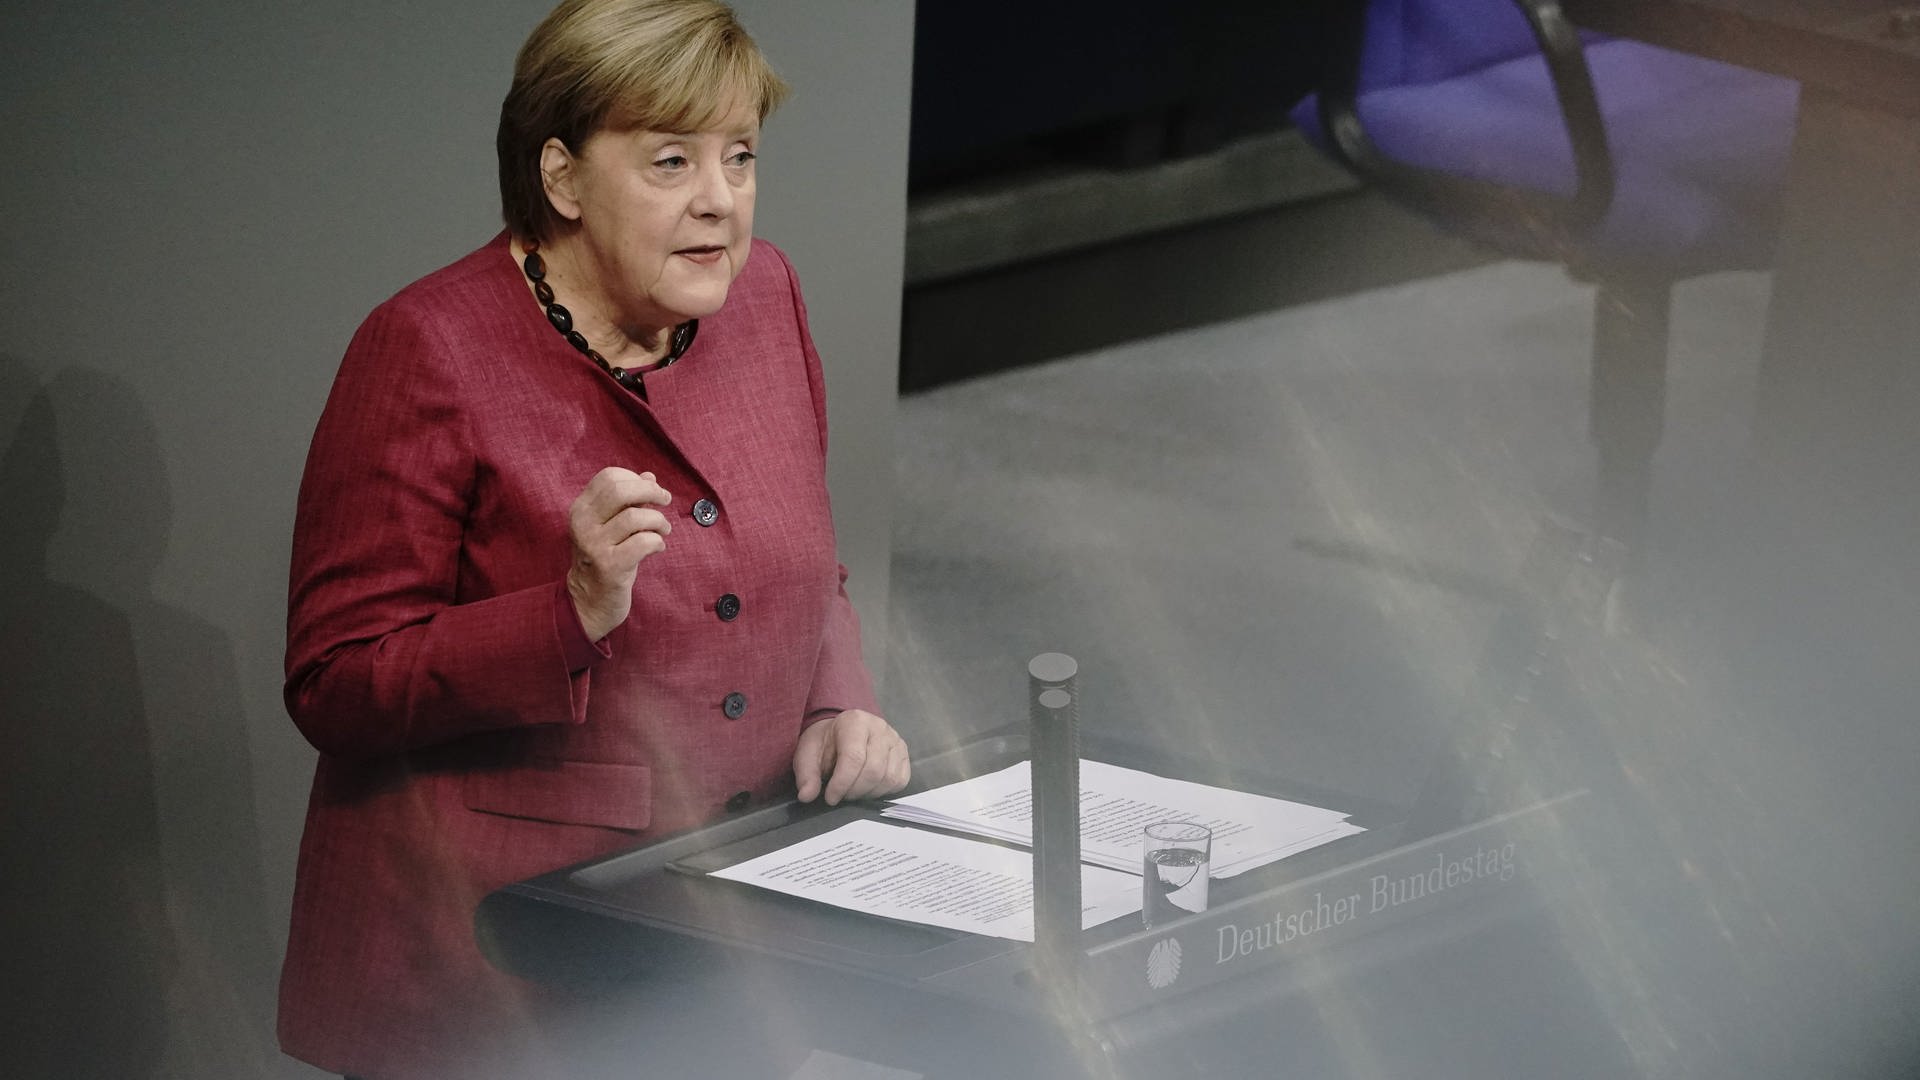 Bundeskanzlerin Angela Merkel gibt im Bundestag eine Regierungserklärung. (Foto: dpa Bildfunk, Picture Alliance)